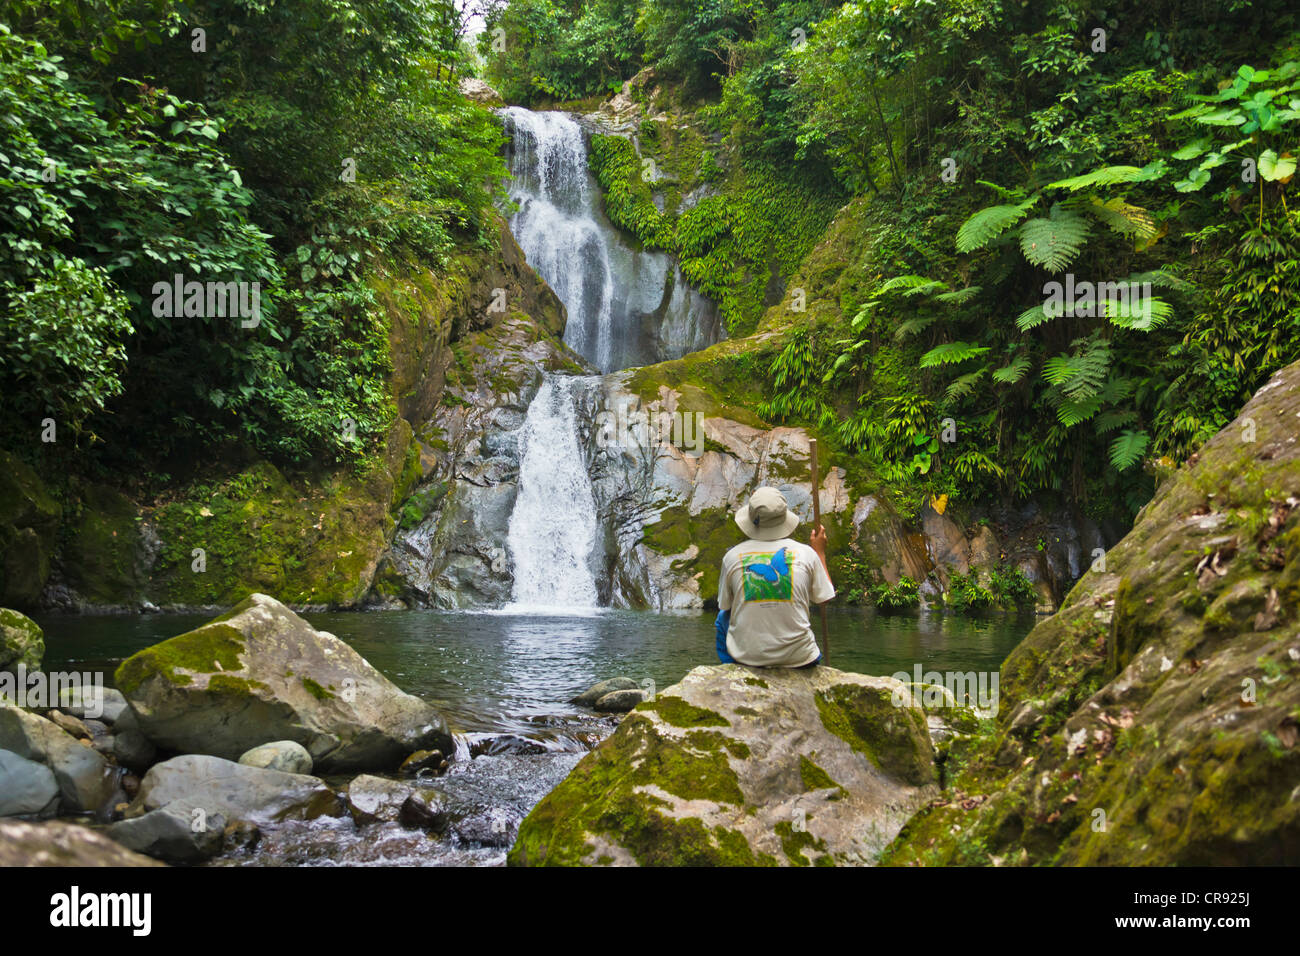 Par la cascade touristique dans la forêt tropicale, Parc National Pico Bonito, Honduras Banque D'Images